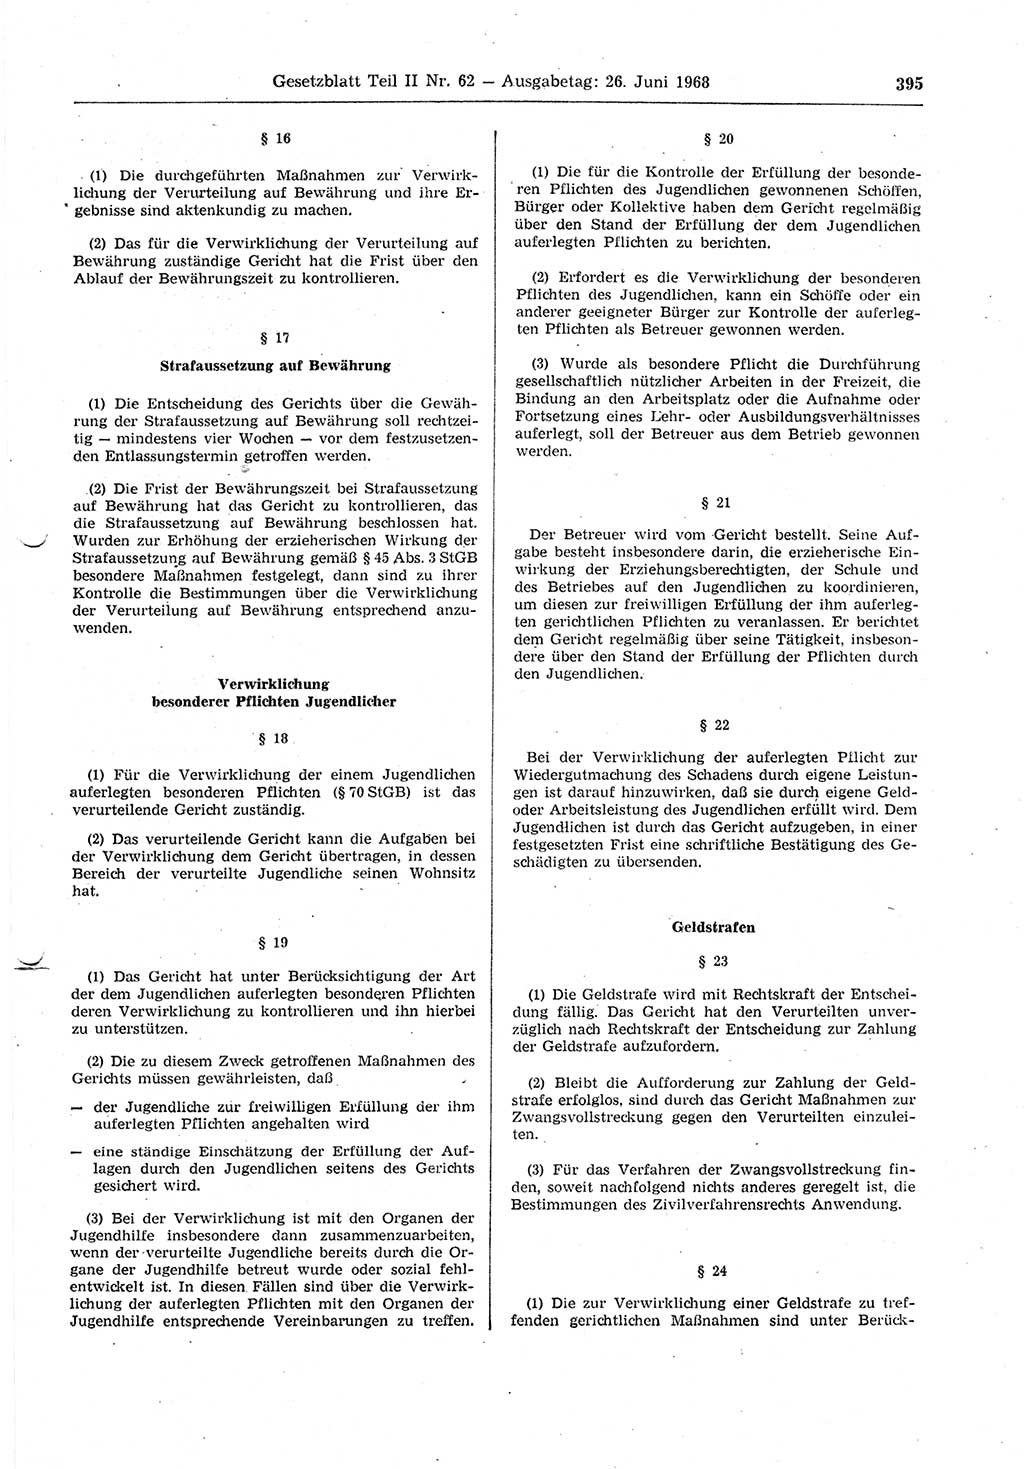 Gesetzblatt (GBl.) der Deutschen Demokratischen Republik (DDR) Teil ⅠⅠ 1968, Seite 395 (GBl. DDR ⅠⅠ 1968, S. 395)